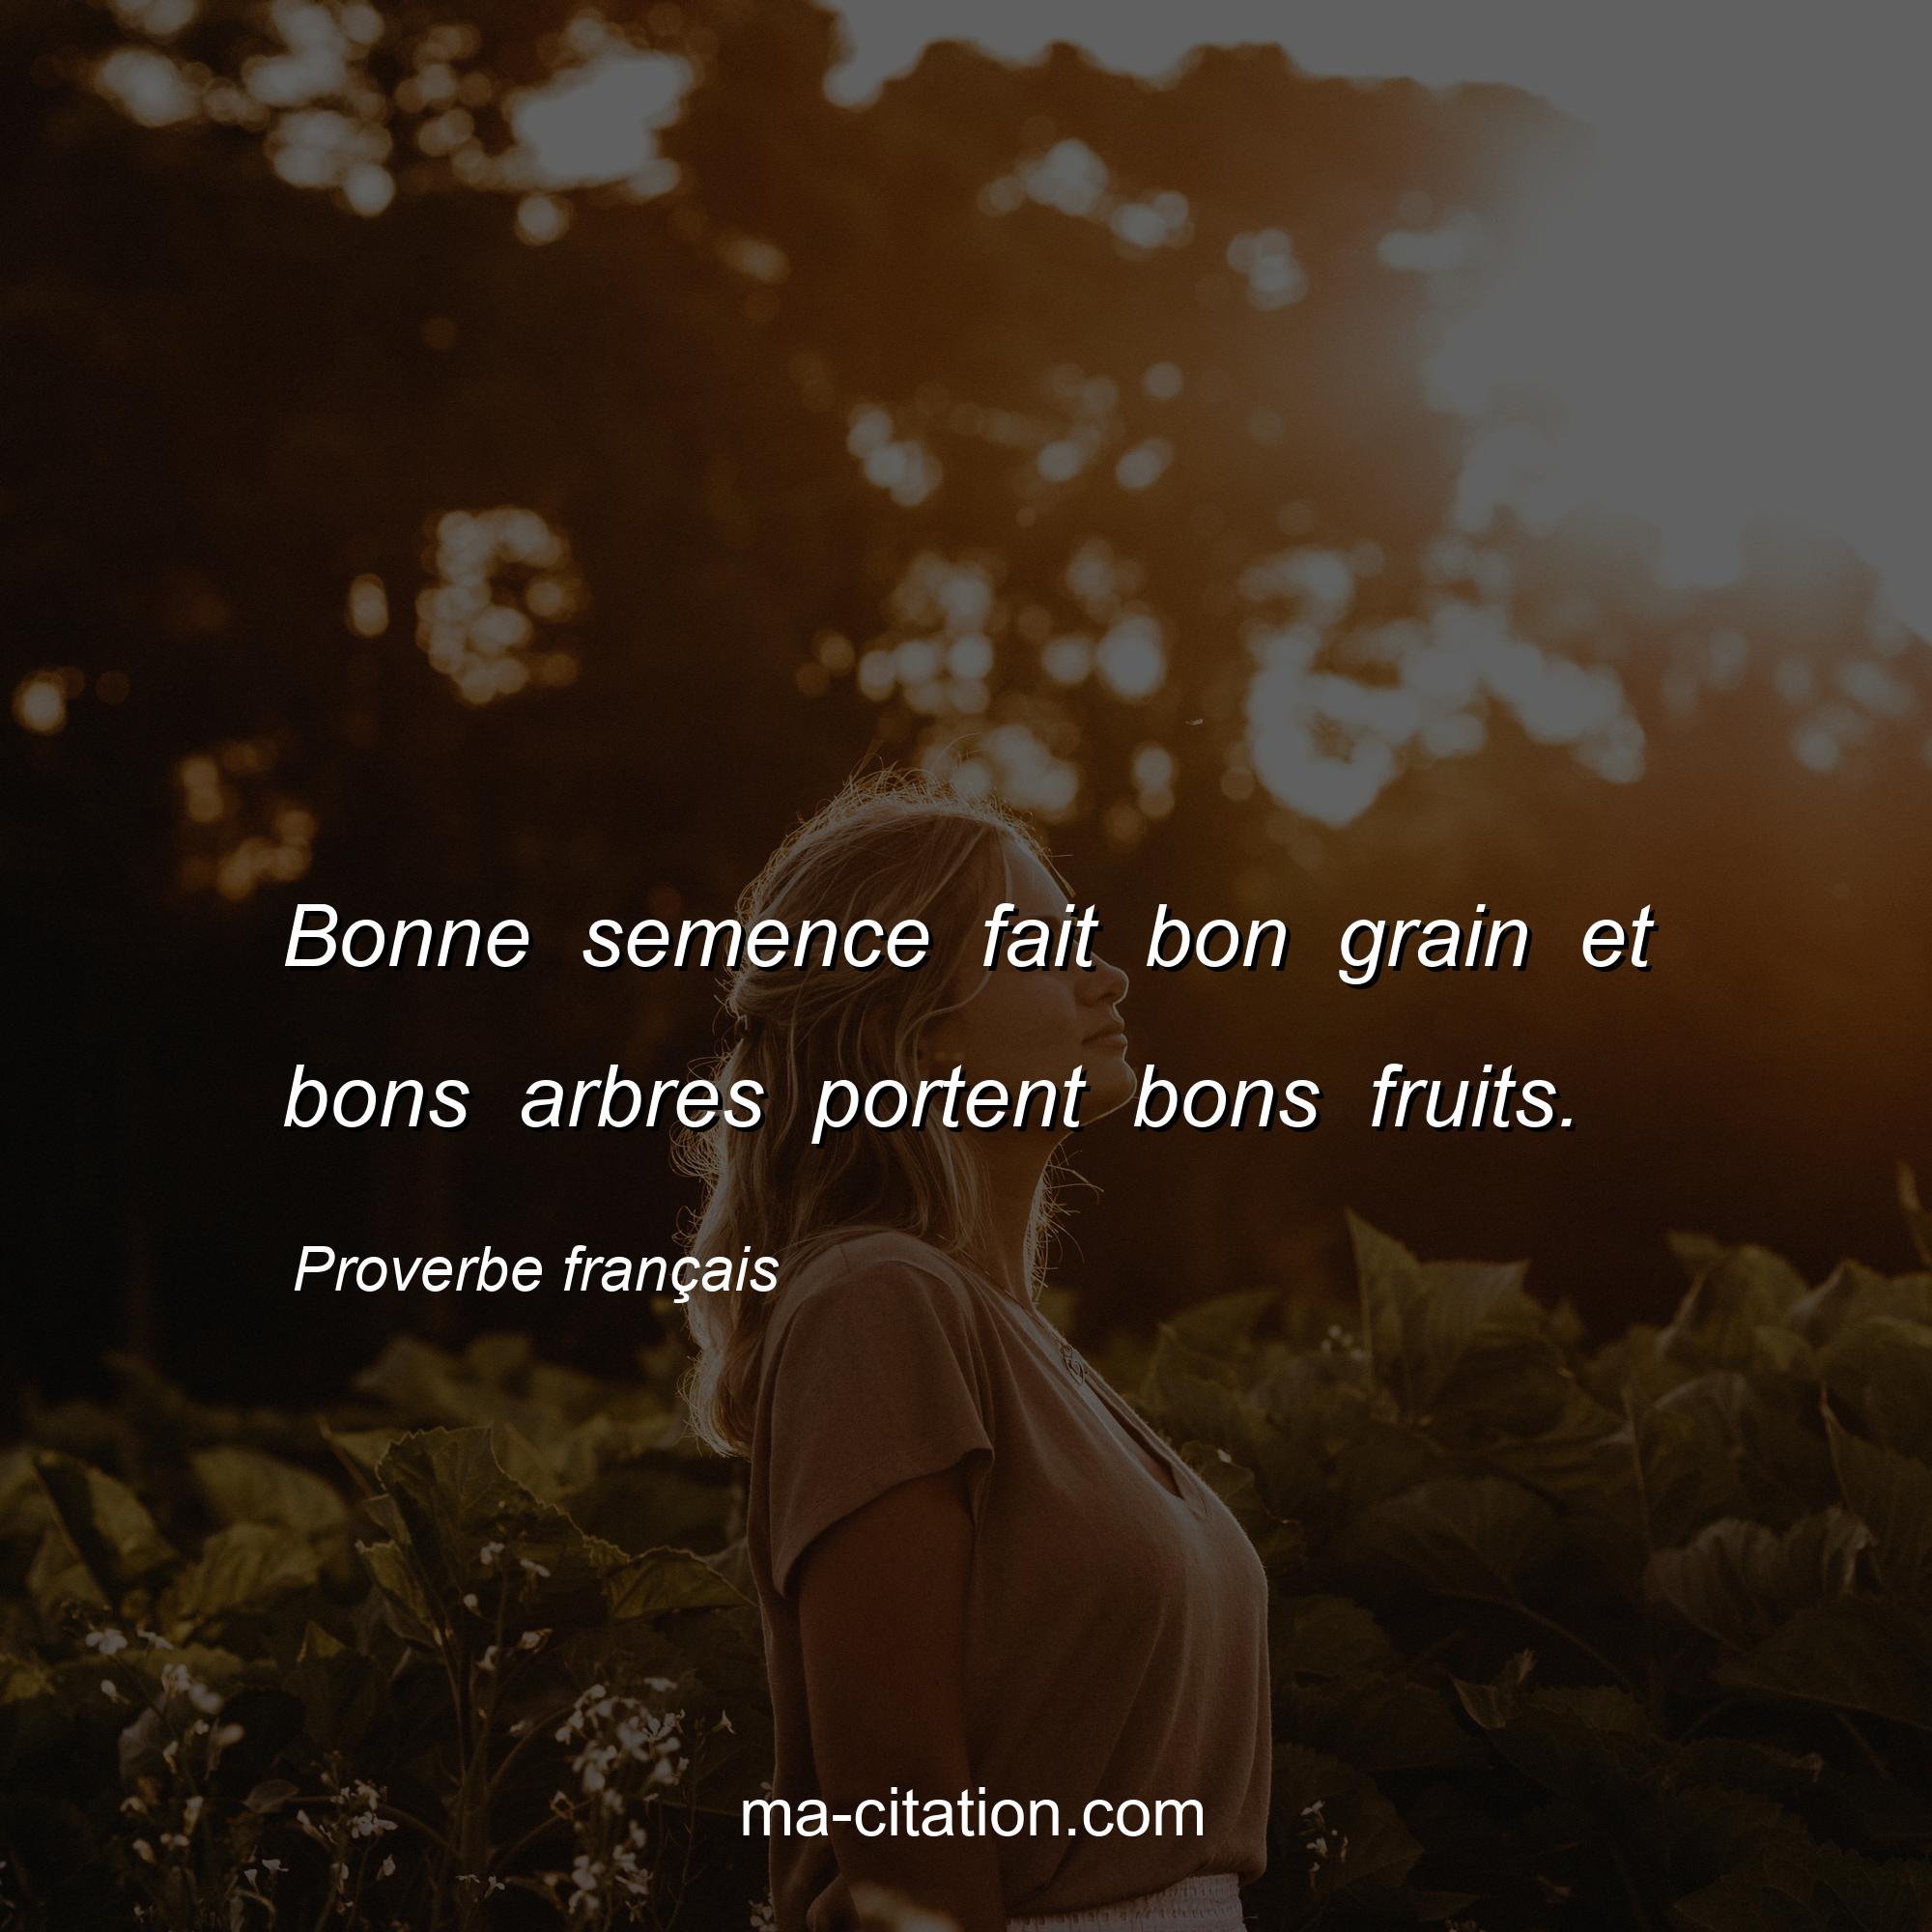 Proverbe français : Bonne semence fait bon grain et bons arbres portent bons fruits.